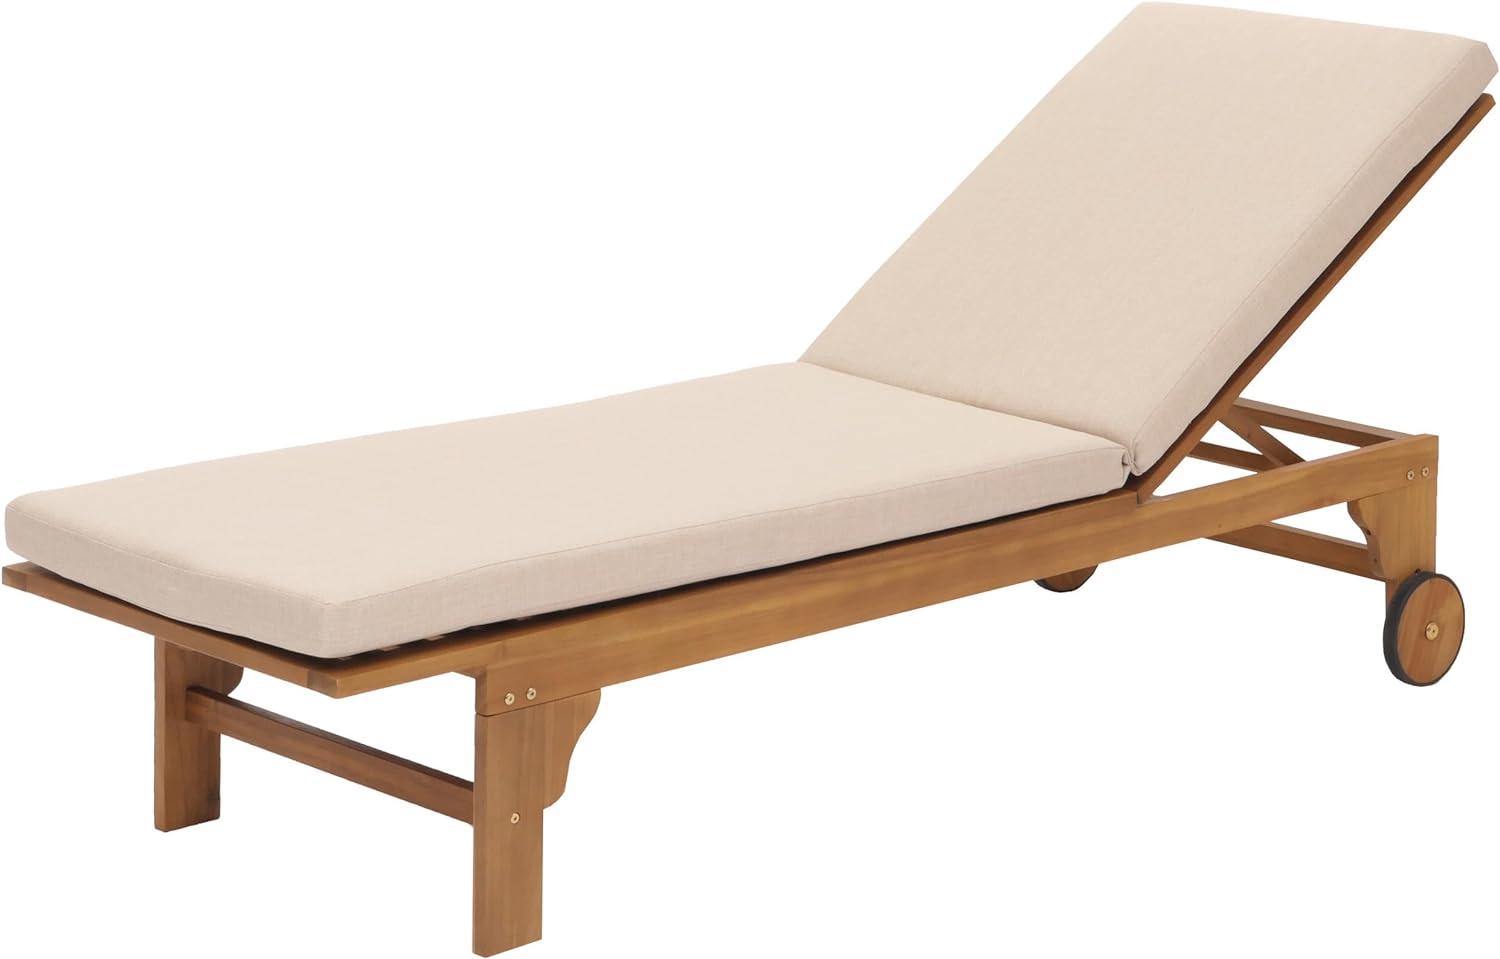 Sonnenliege HWC-N48, Gartenliege Relaxliege Liegestuhl, Massiv-Holz Akazie MVG-zertifiziert ~ Kissen creme-beige Bild 1